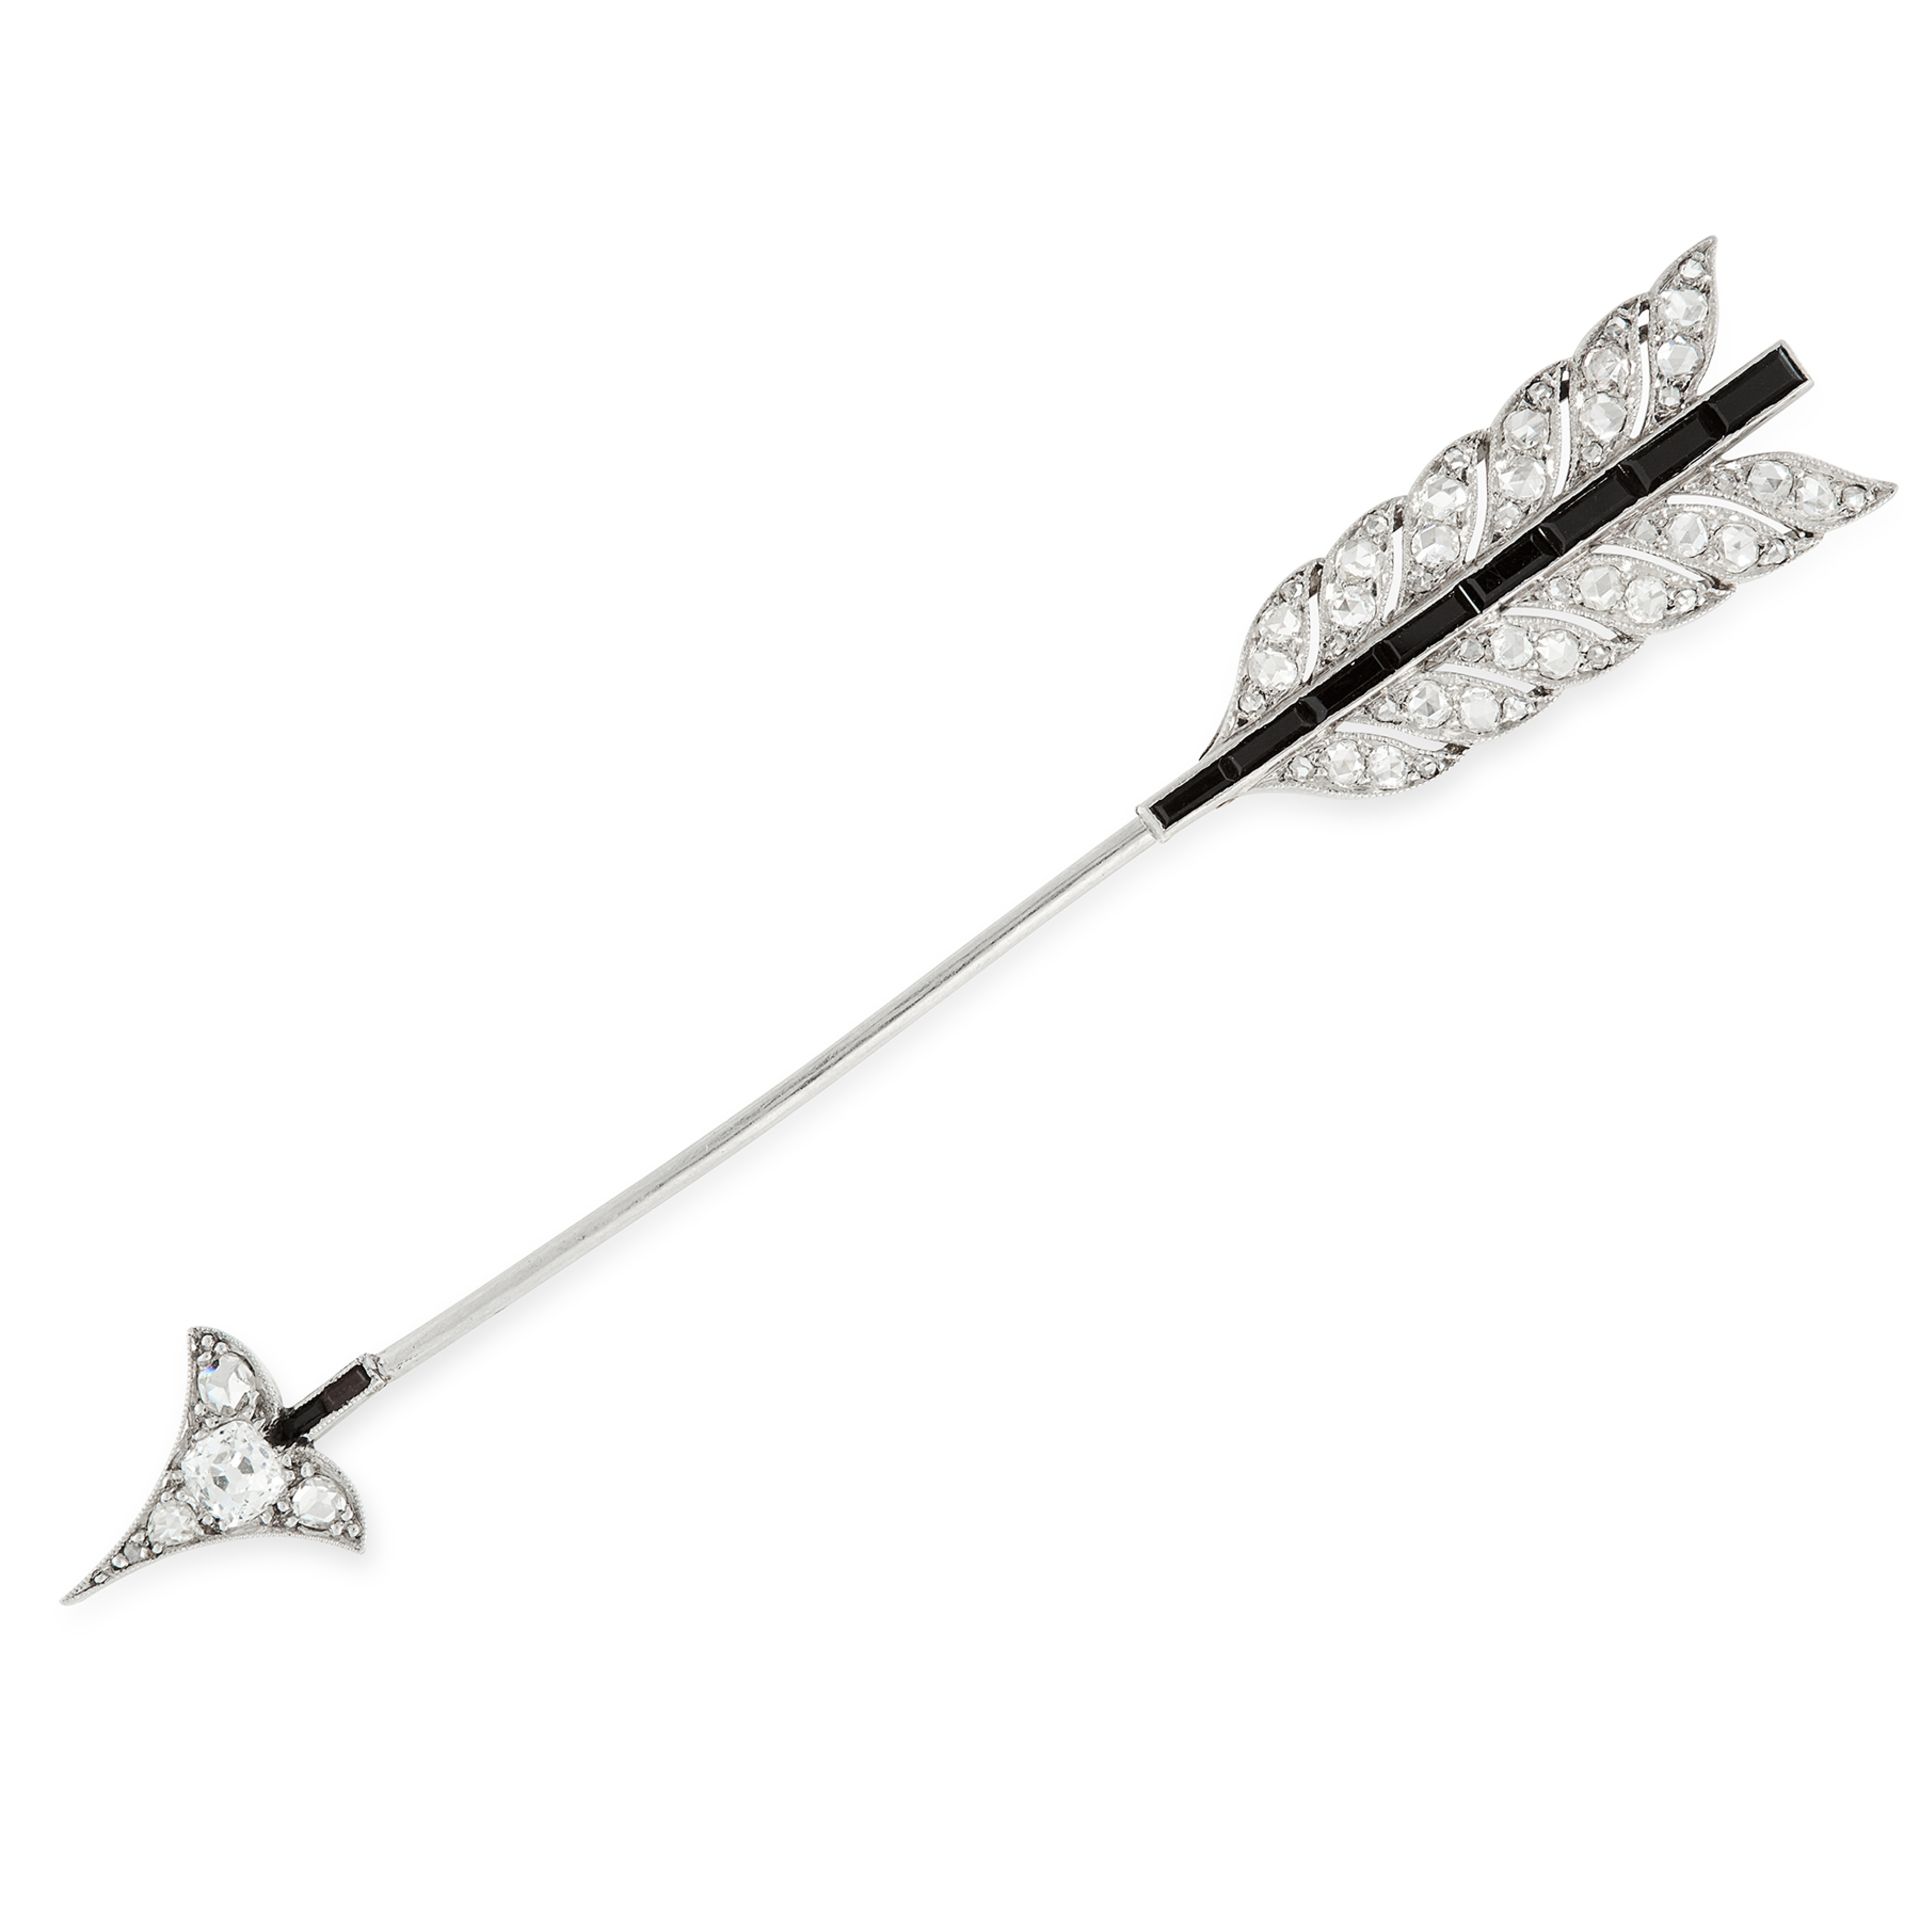 AN ANTIQUE DIAMOND AND SAPPHIRE ARROW BROOCH, CARTIER in platinum, designed as an arrow head, set